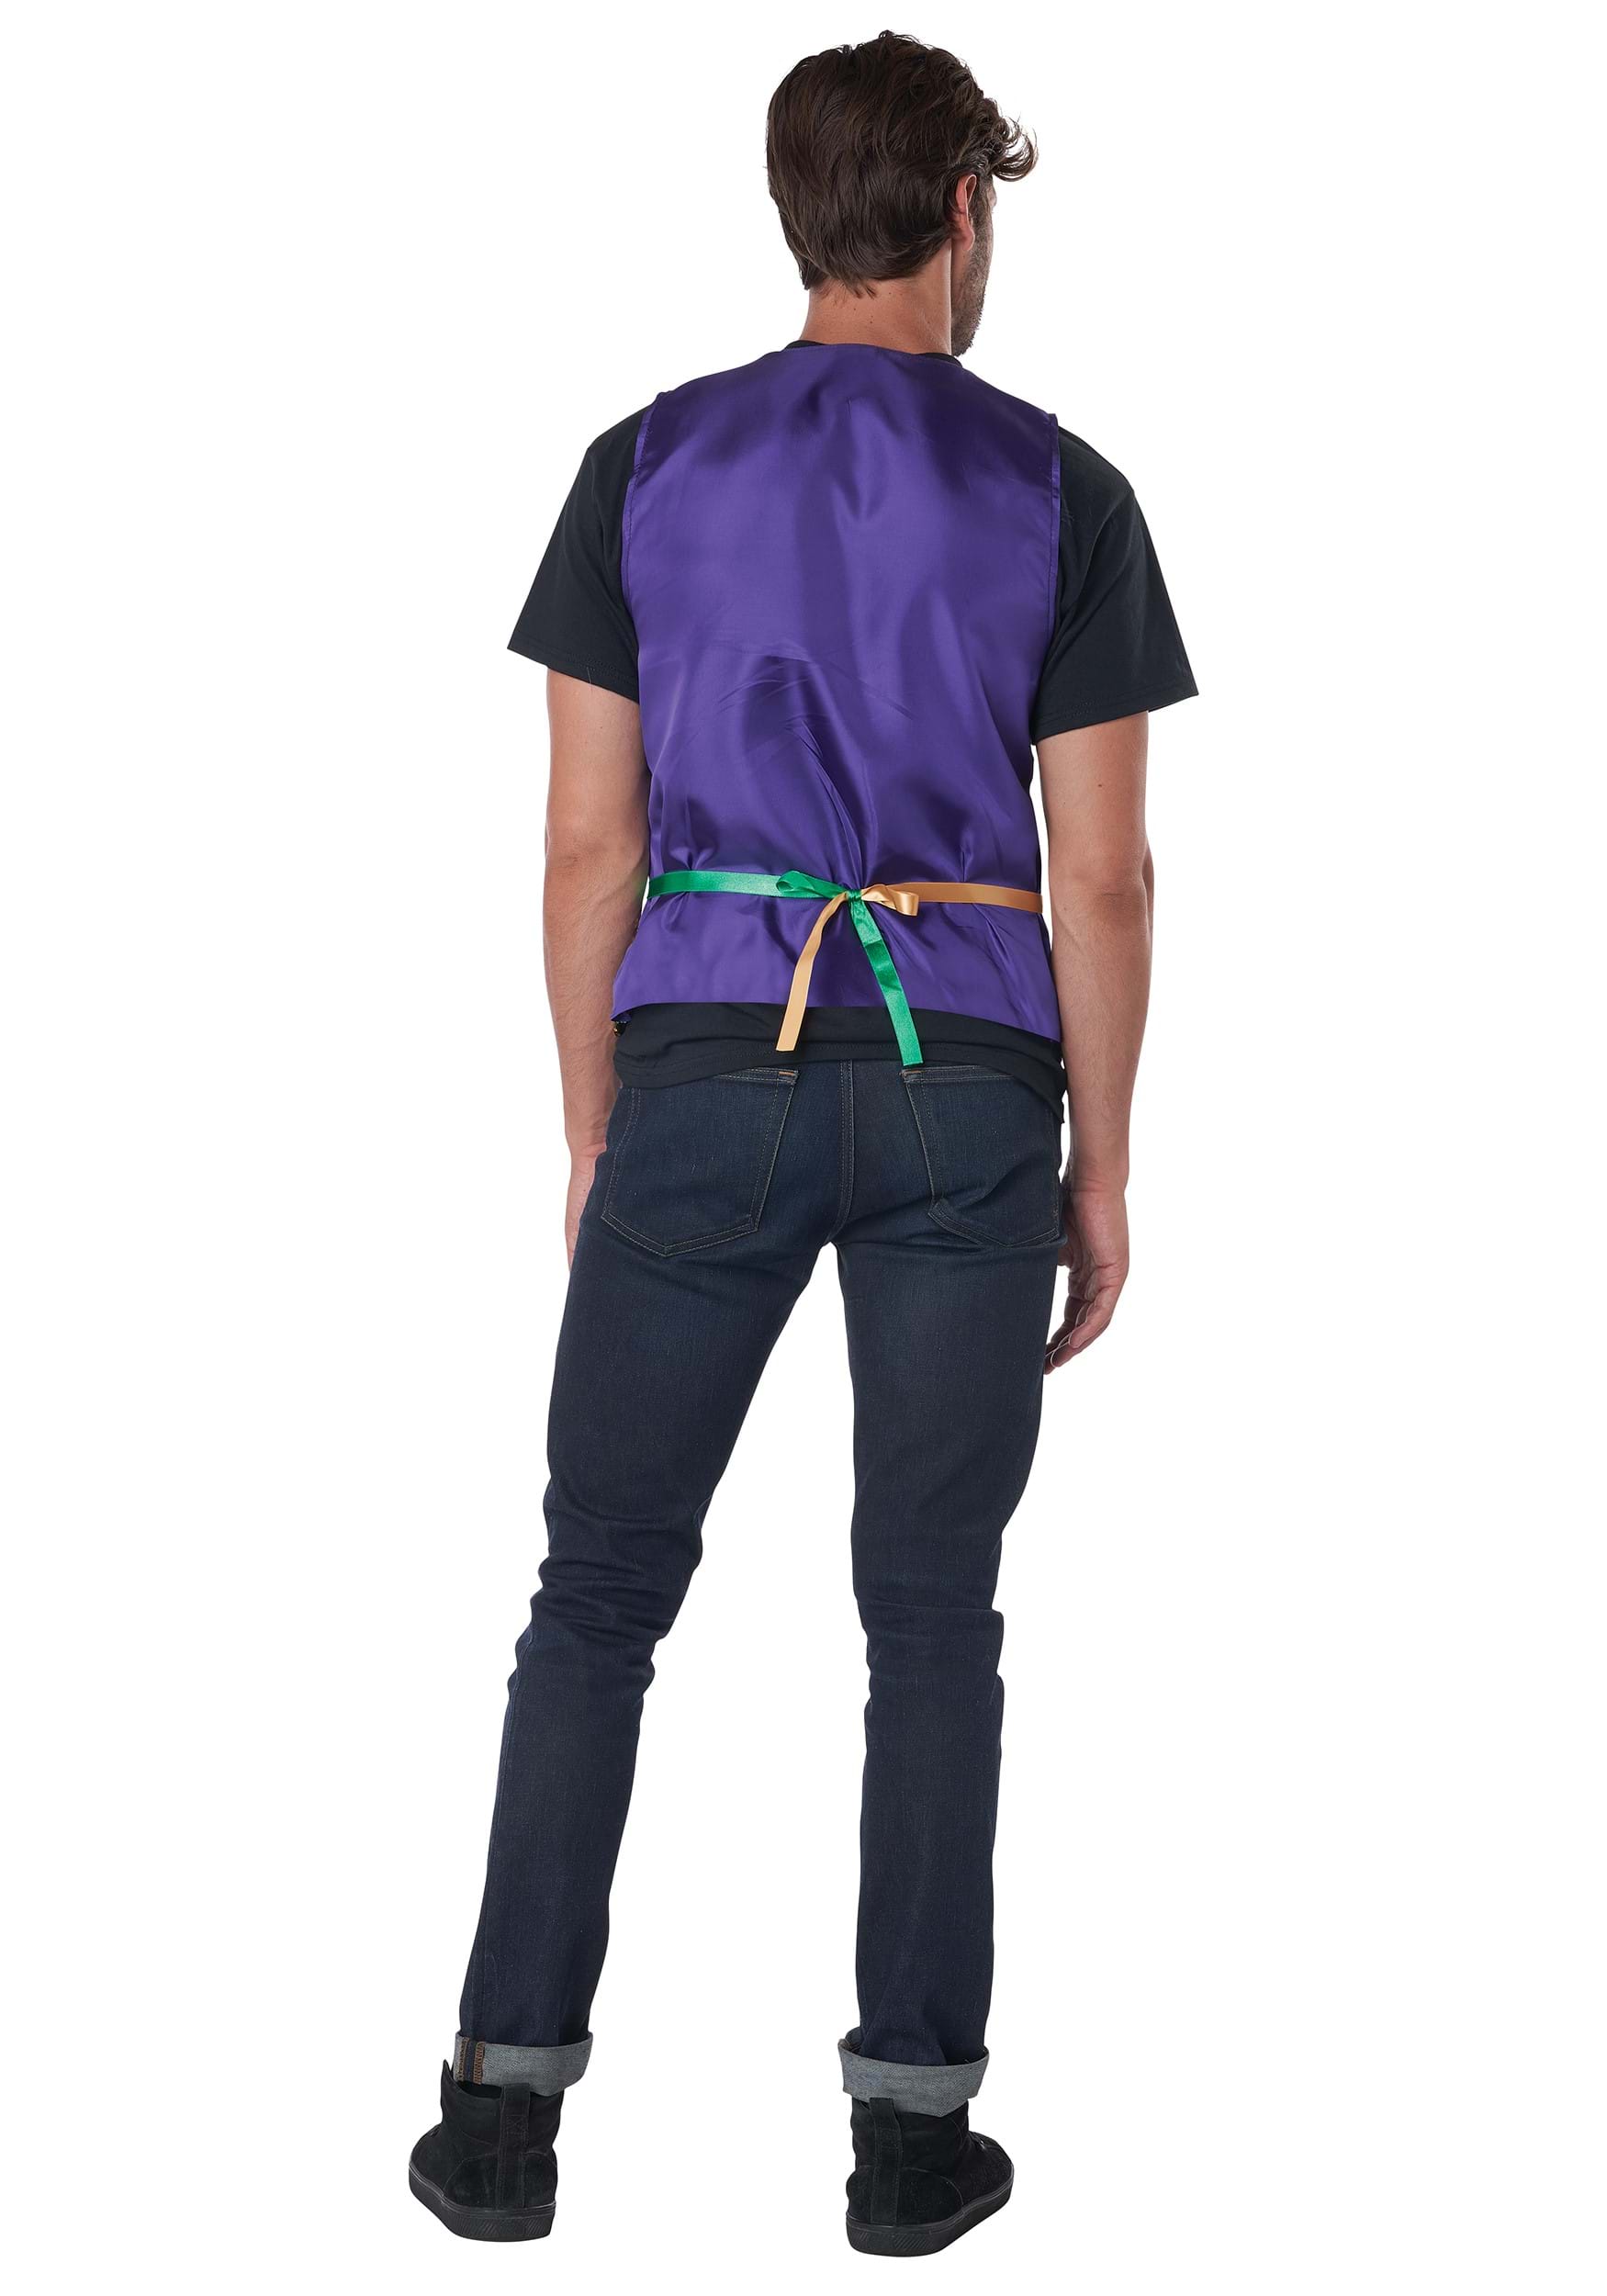 Sequined Men's Carnival Vest Set